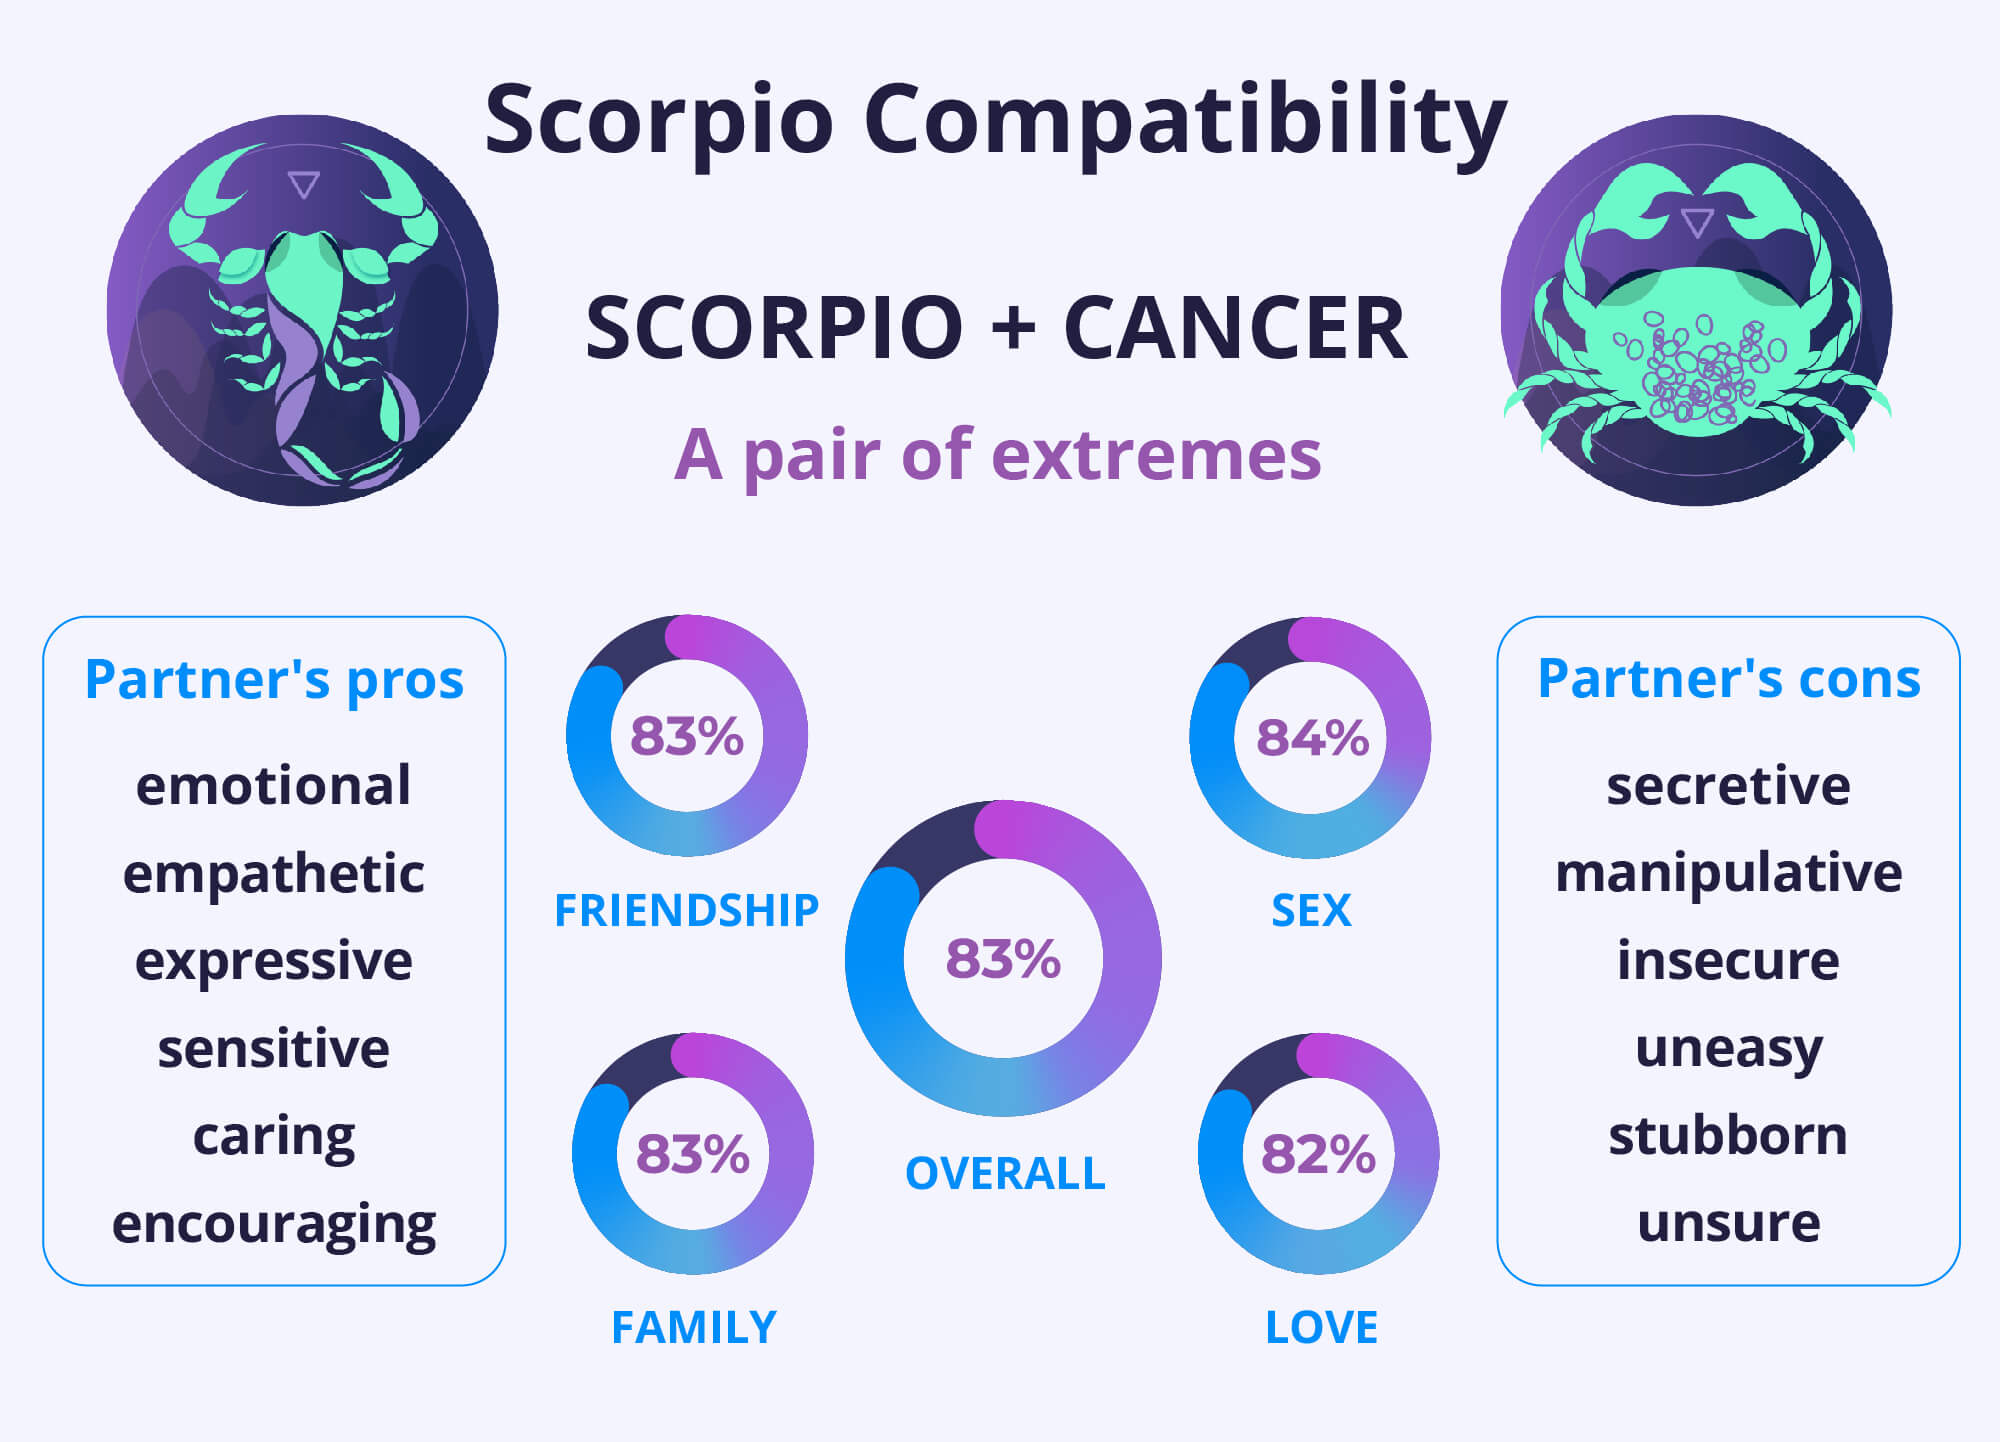 Scorpio and Scorpio Compatibility Chart